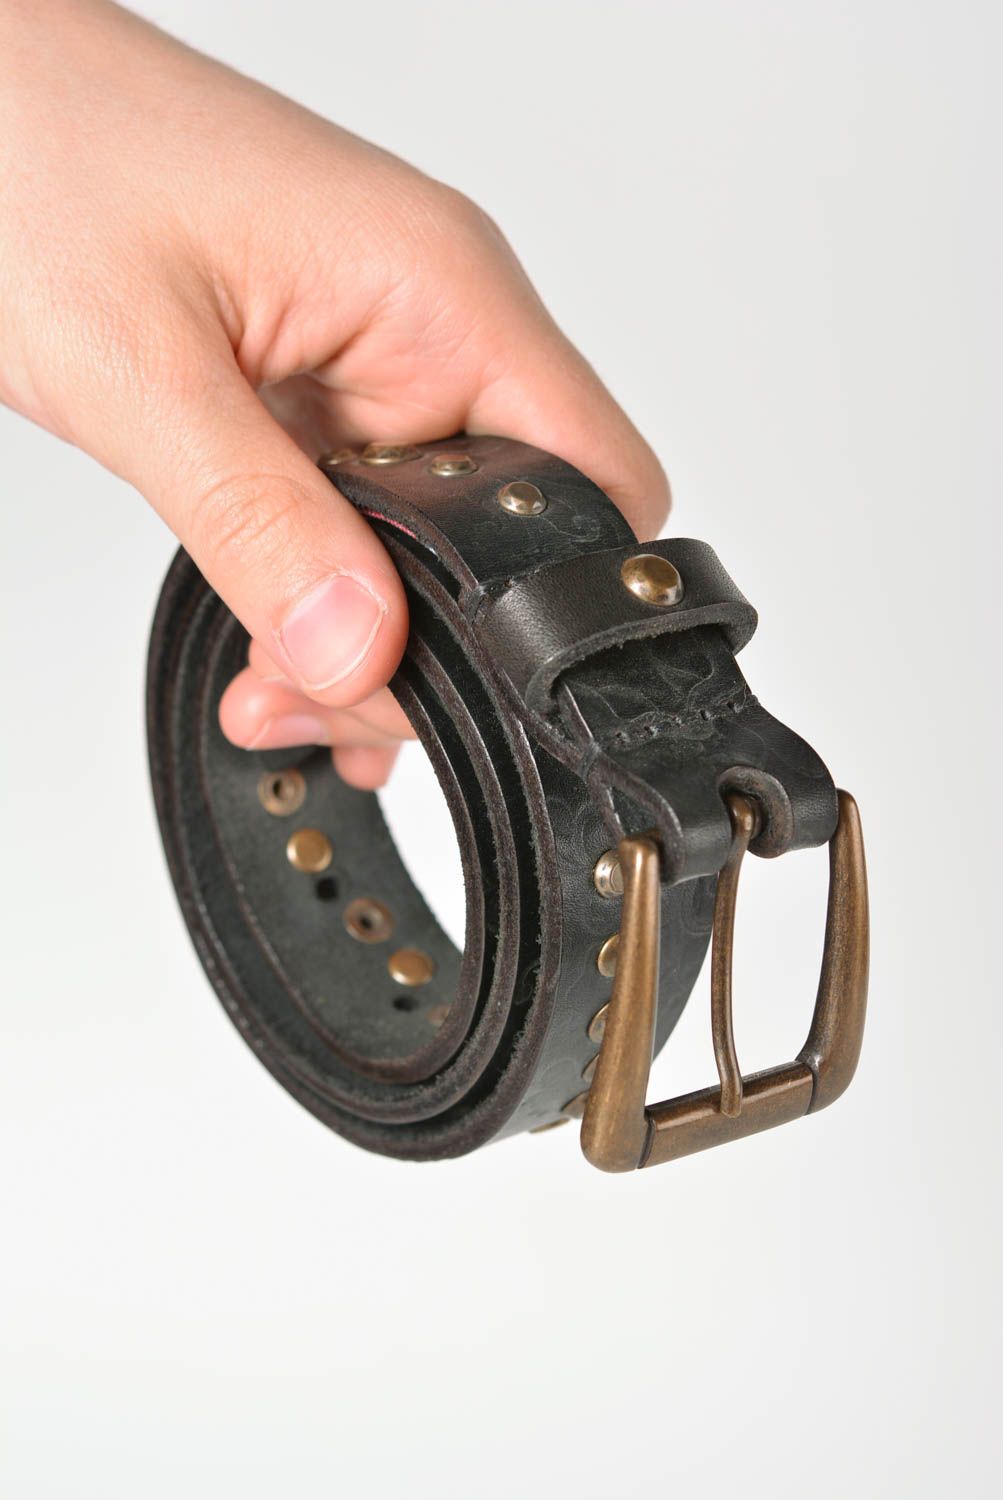 Cinturón de cuero hecho a mano ropa masculina estilosa accesorio de moda foto 3